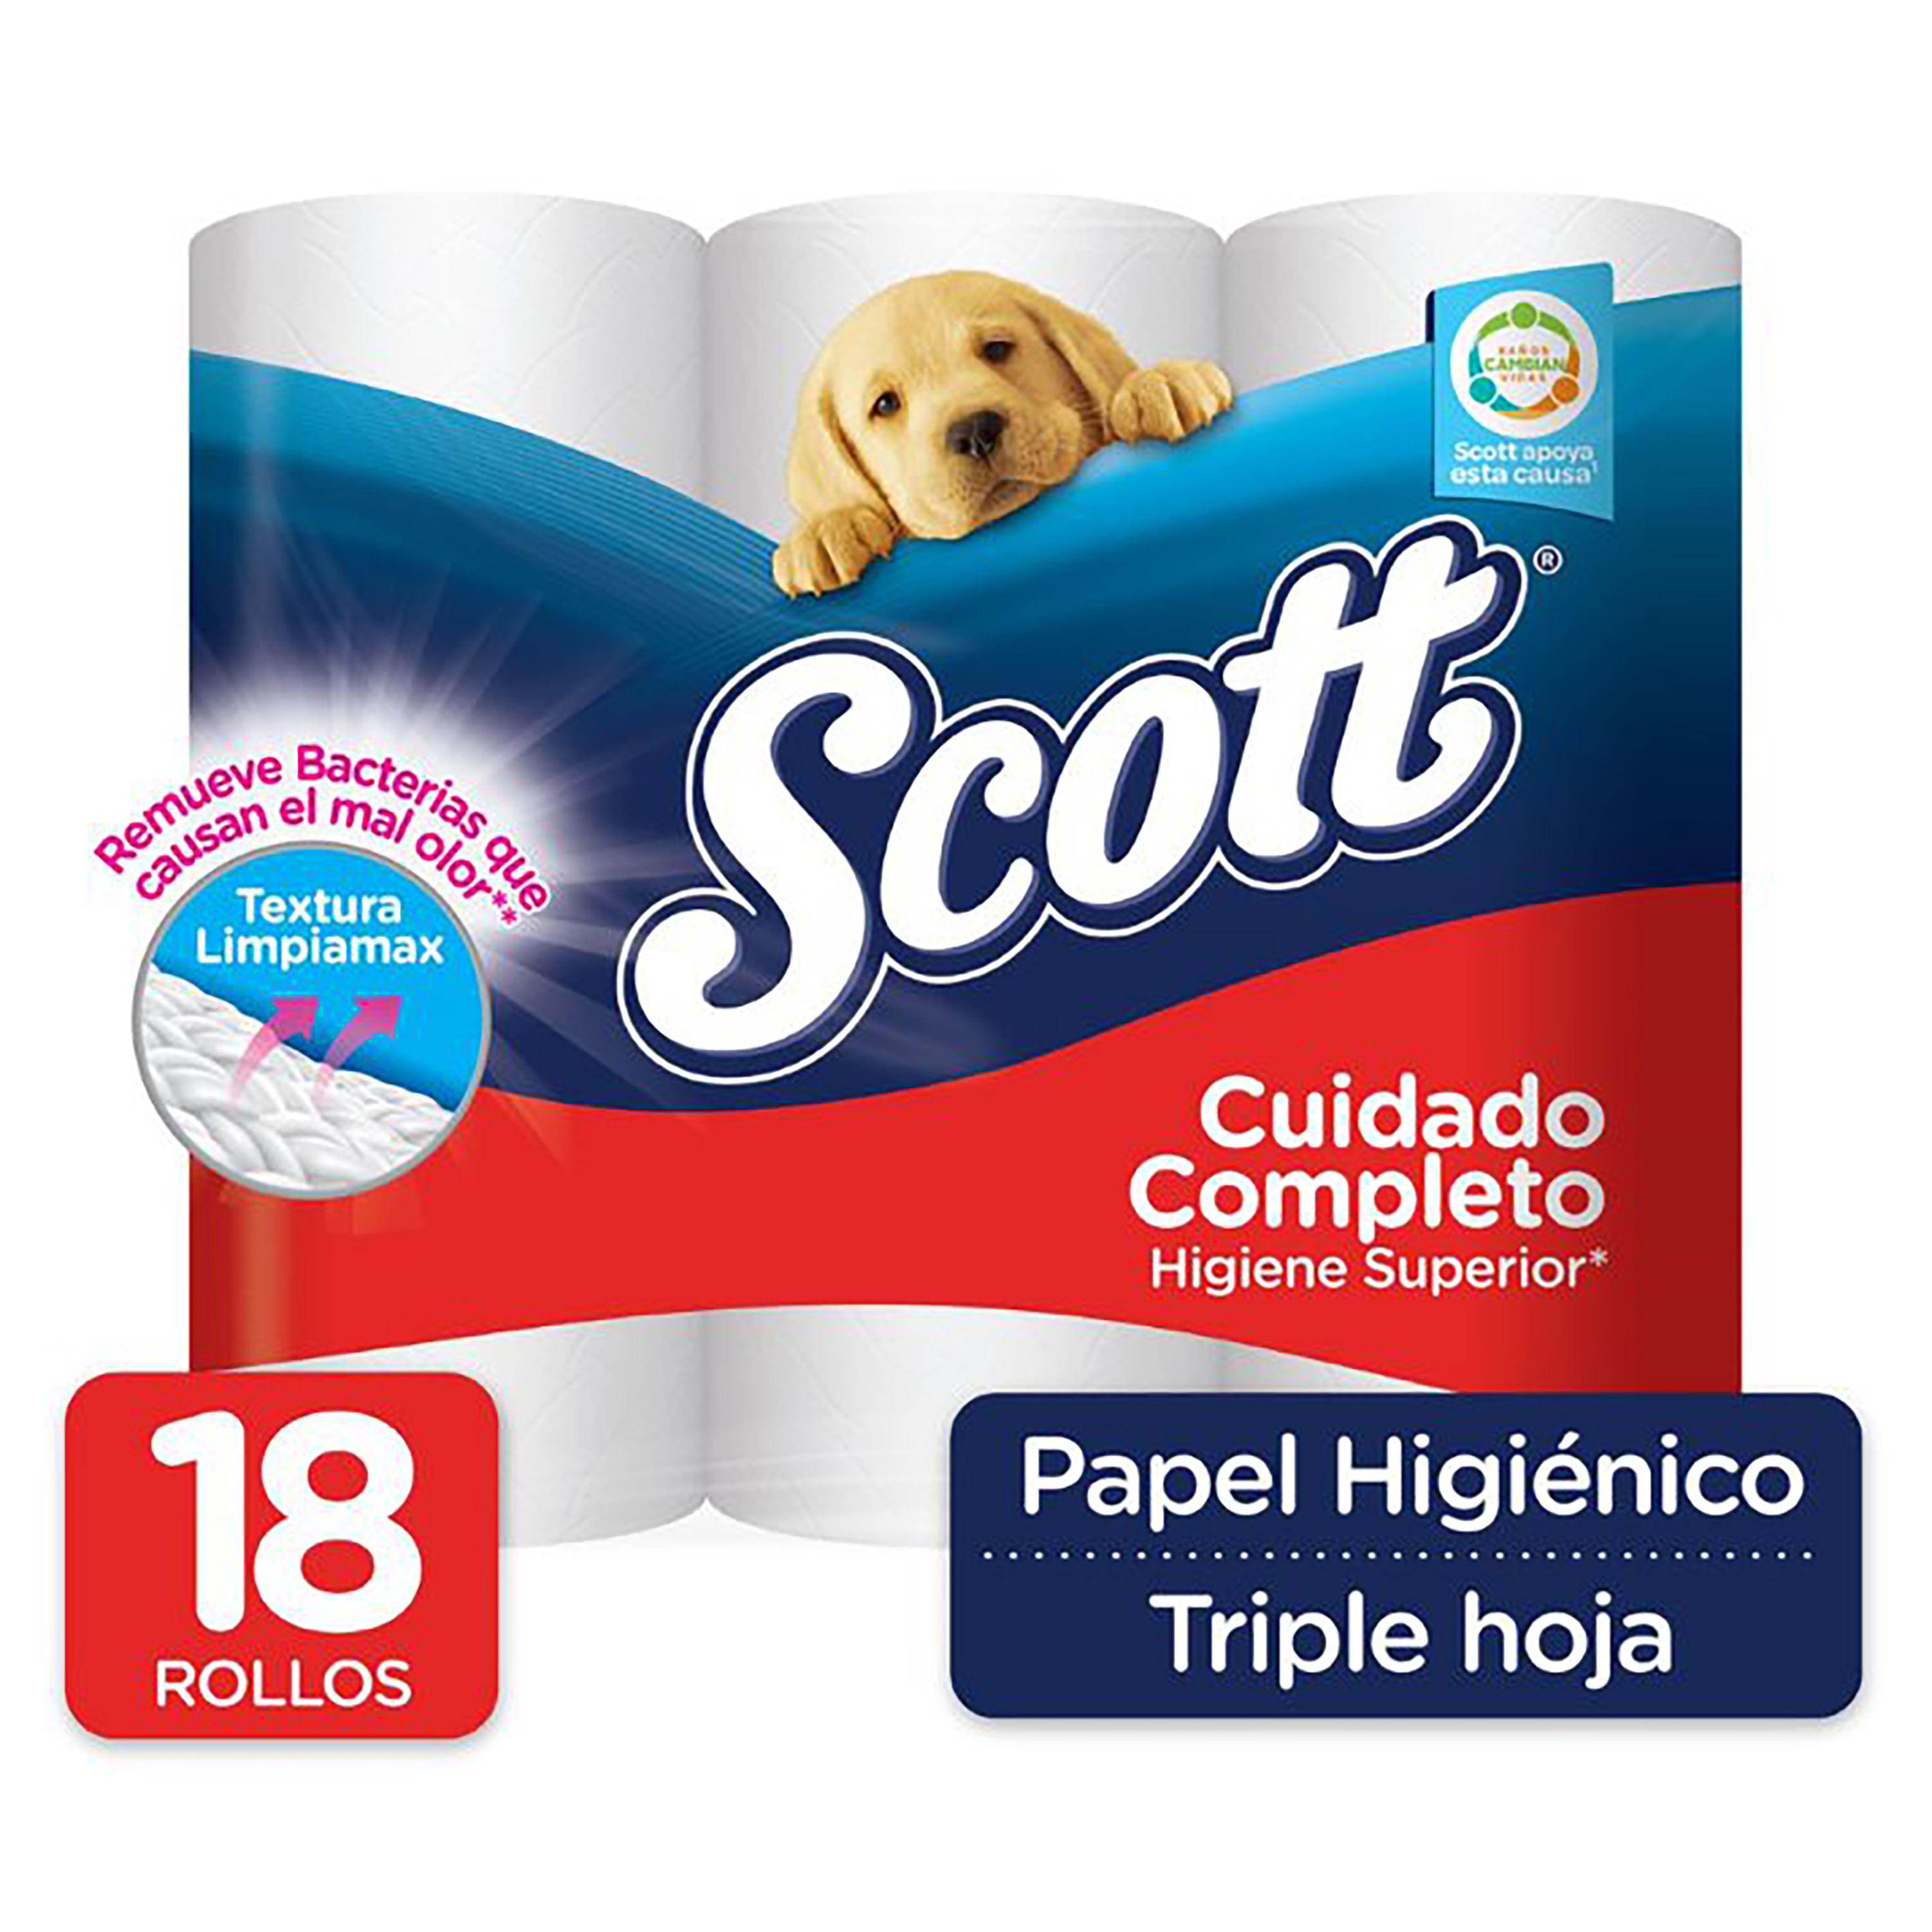  Scottex Papel higiénico original - 128 rollos : Salud y Hogar